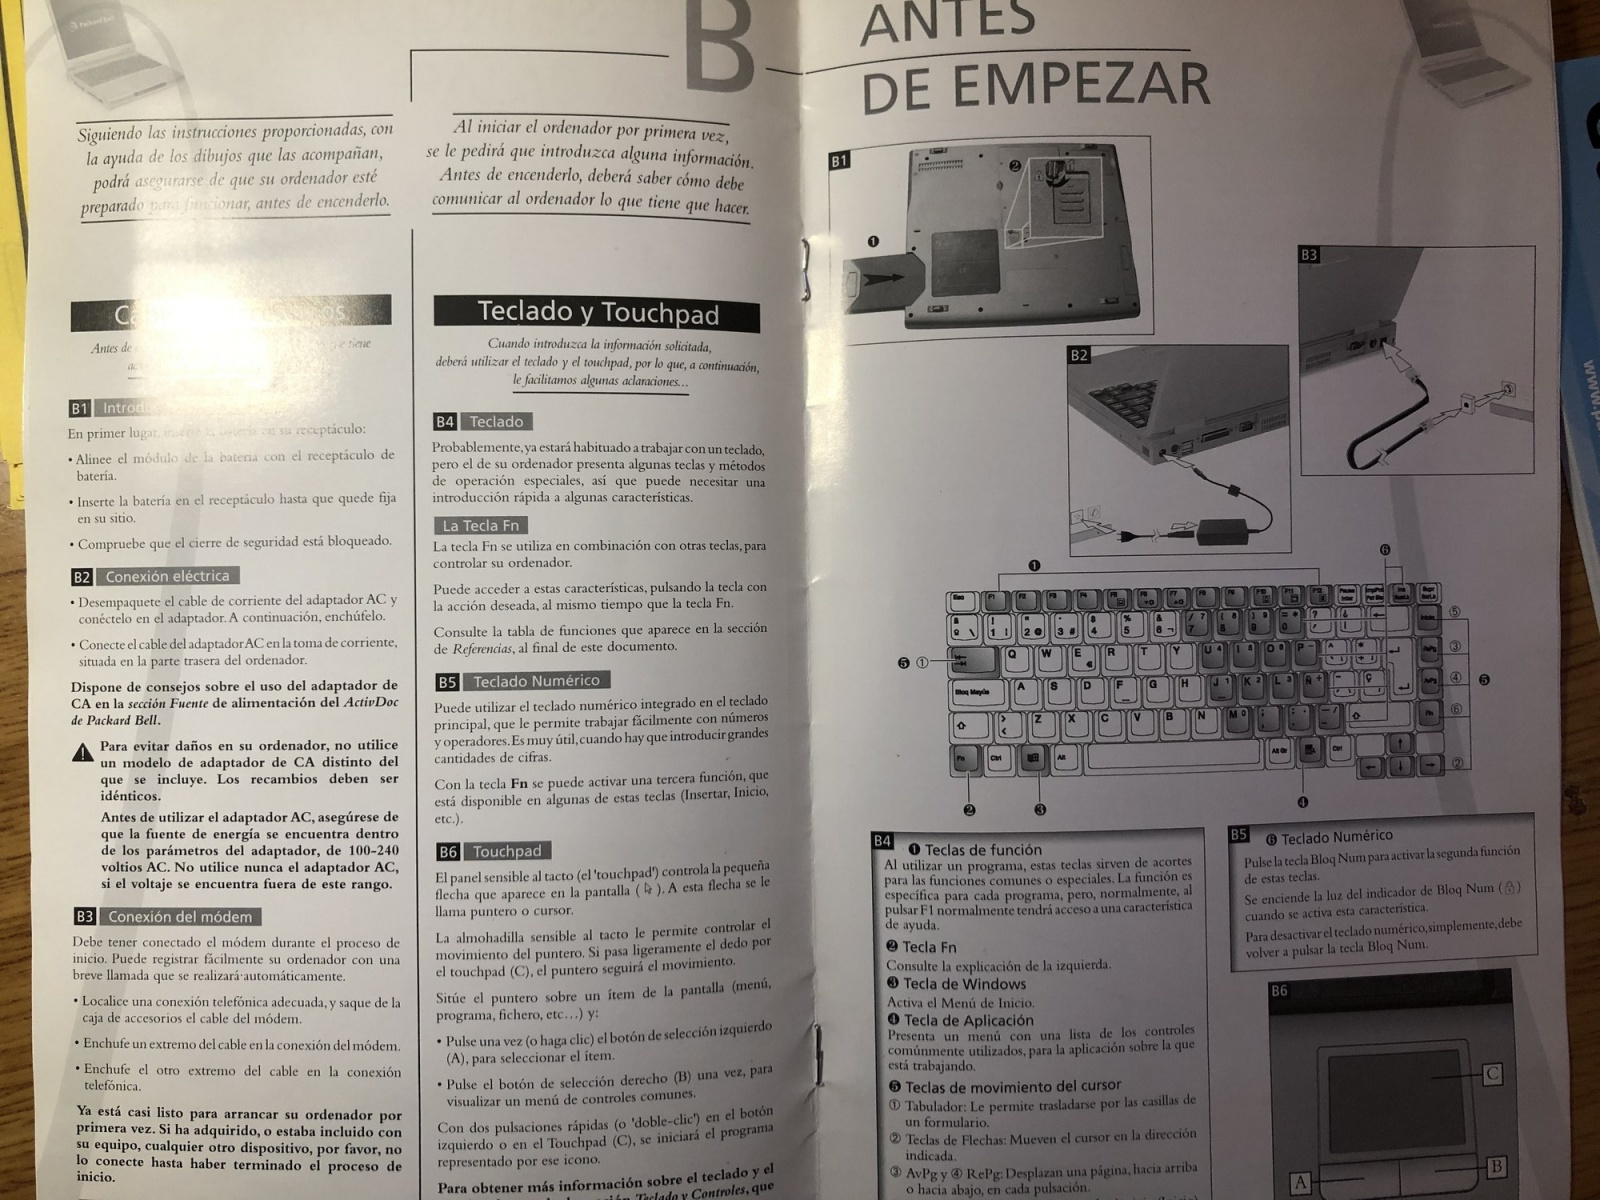 Гаджеты с барахолки: зачем покупать 20-летний ноутбук Packard Bell за 10 евро - 10